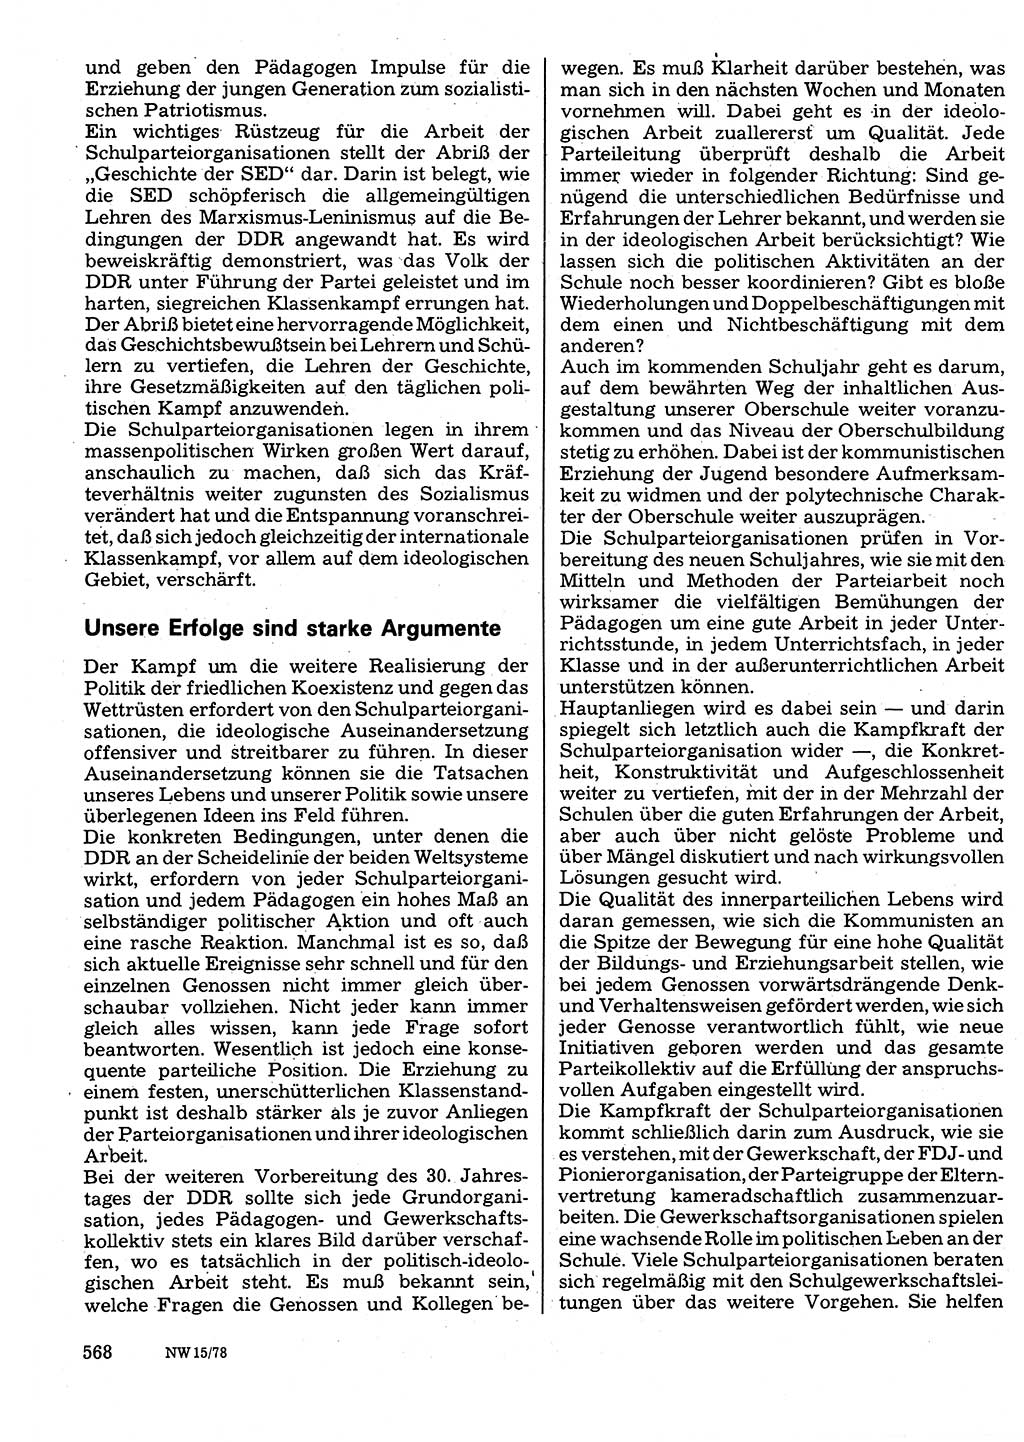 Neuer Weg (NW), Organ des Zentralkomitees (ZK) der SED (Sozialistische Einheitspartei Deutschlands) für Fragen des Parteilebens, 33. Jahrgang [Deutsche Demokratische Republik (DDR)] 1978, Seite 568 (NW ZK SED DDR 1978, S. 568)